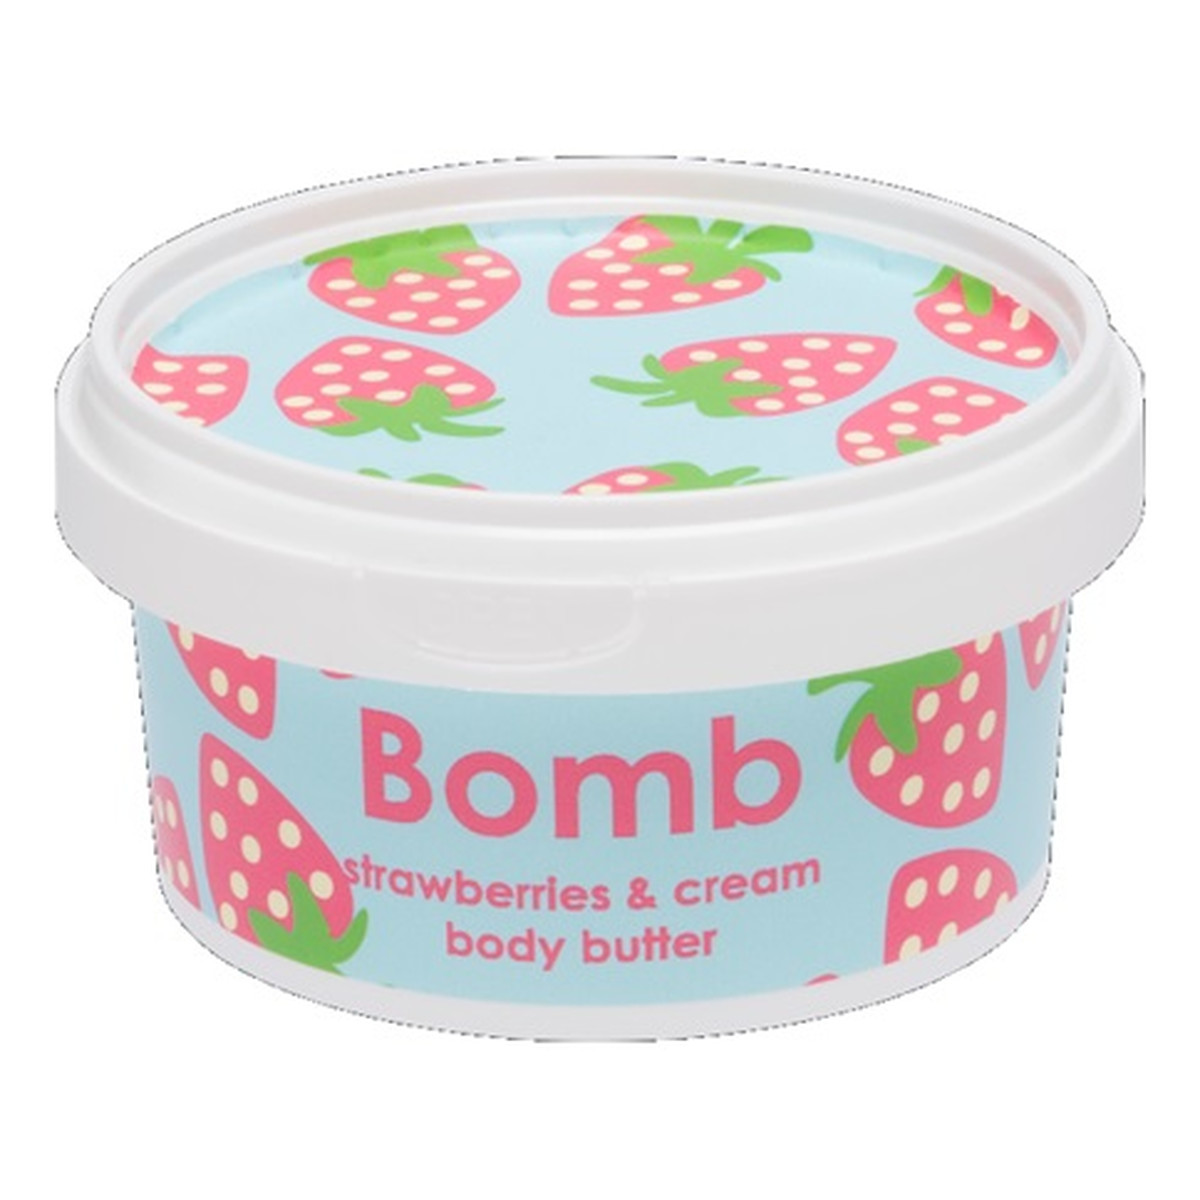 Bomb Cosmetics Strawberry & cream prefect body butter masło do ciała truskawka & śmietana 200ml